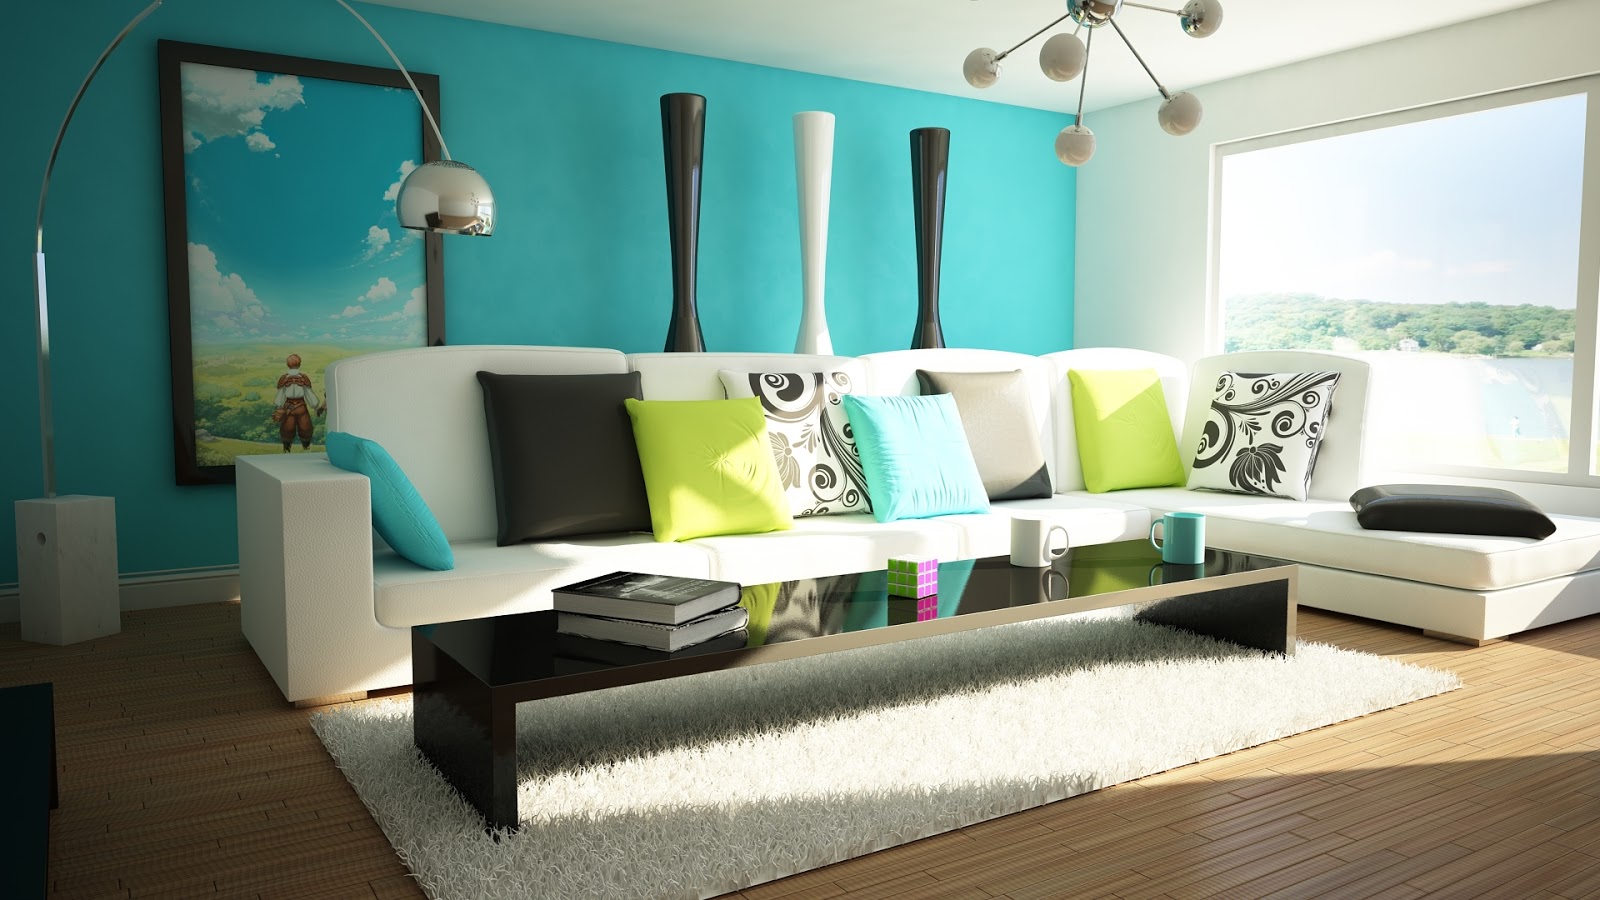 desain interior rumah minimalis